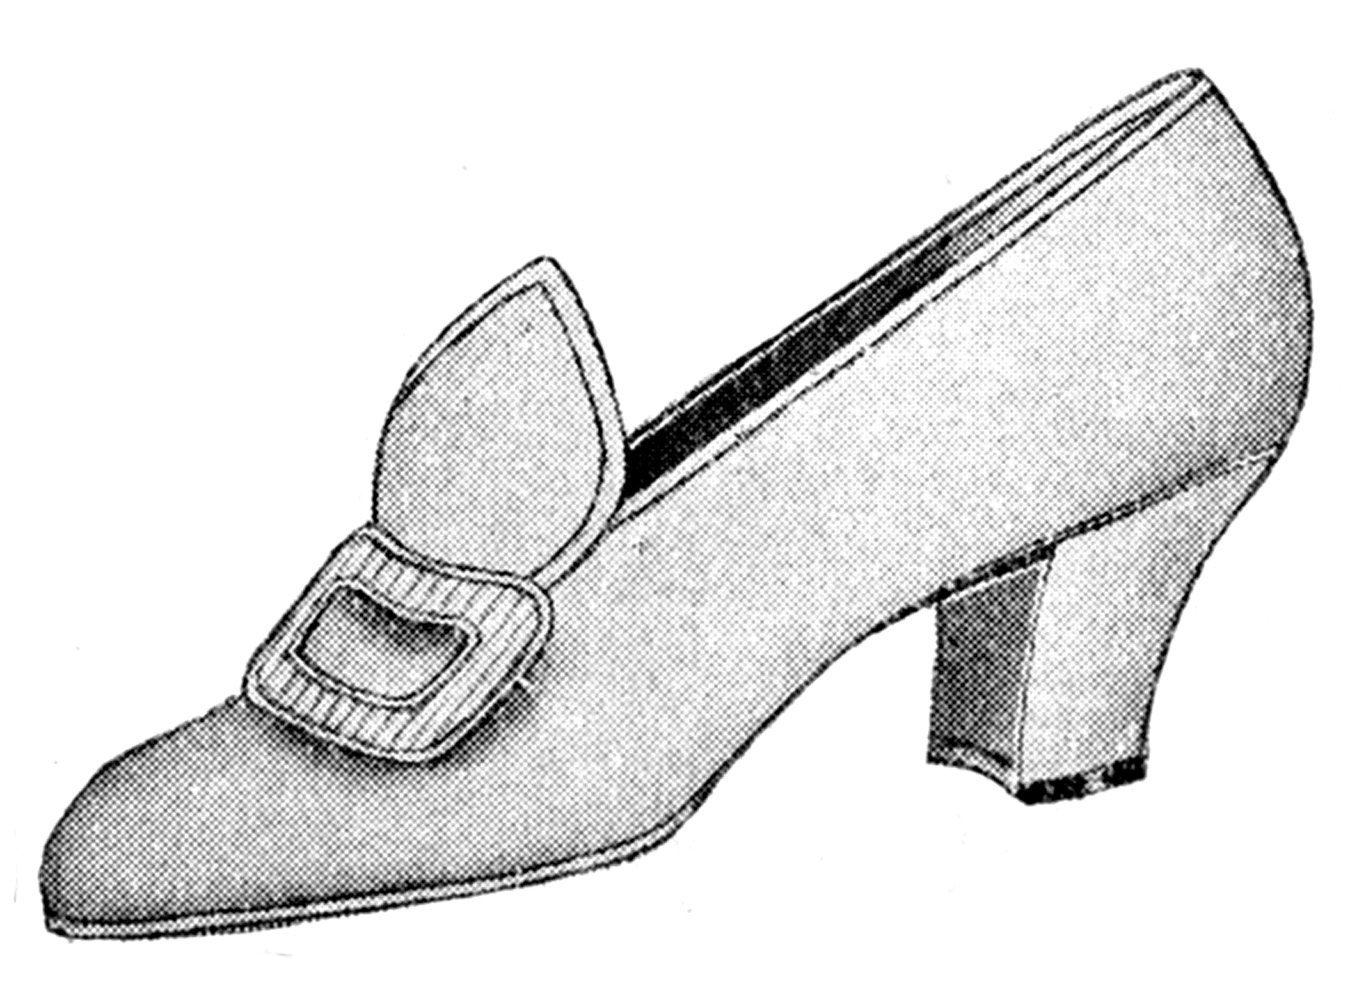 Vintage clip art ladies shoes the graphics fairy